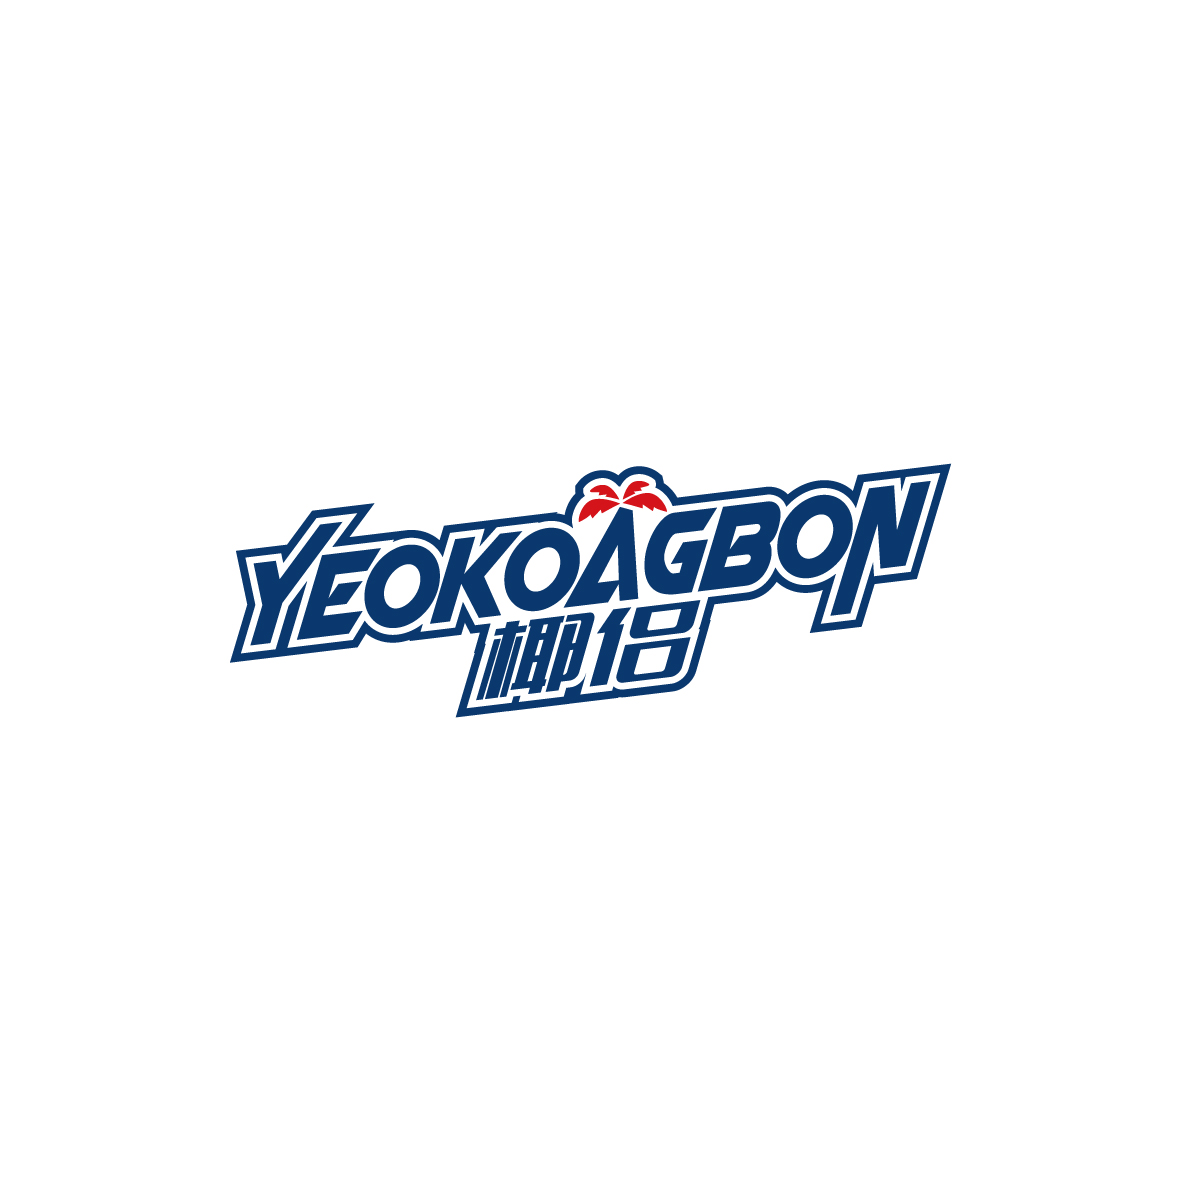 广州锦泰荣网络科技有限公司商标椰侣 YEOKOAGBON（25类）商标转让多少钱？